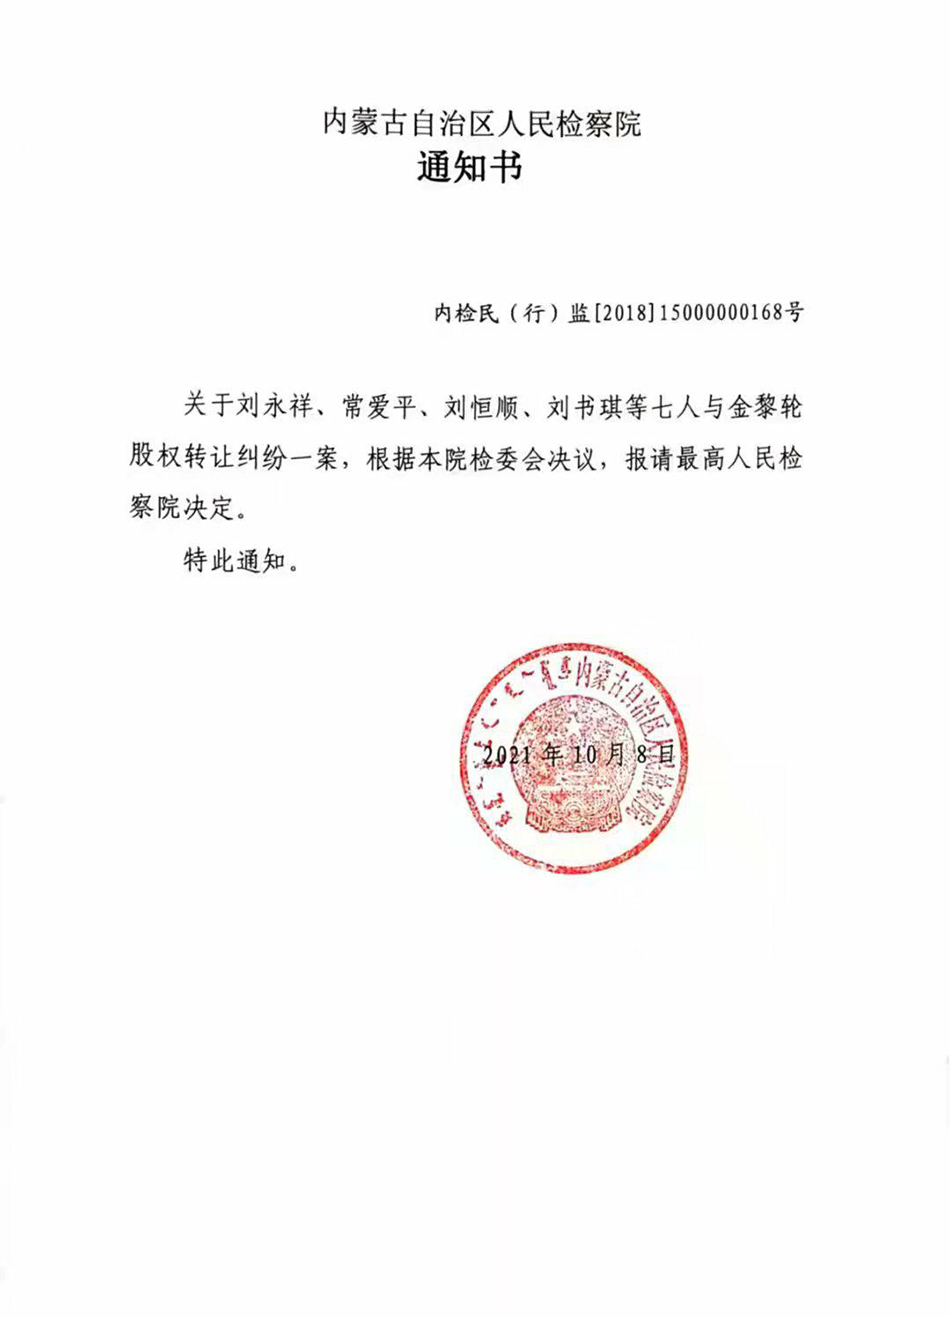 内蒙古自治区人民检察院2021年10月8日的通知书称，已报请最高人民检察院决定。